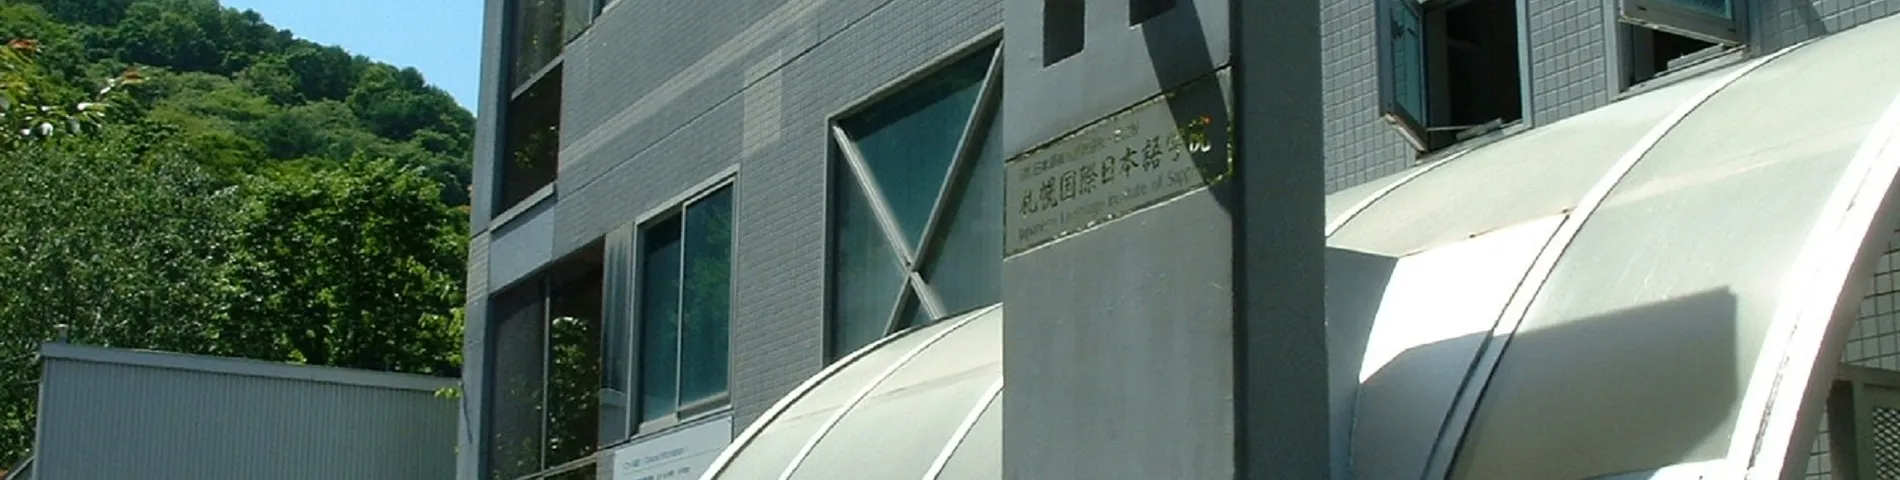 Japanese Language Institute of Sapporo resim 1